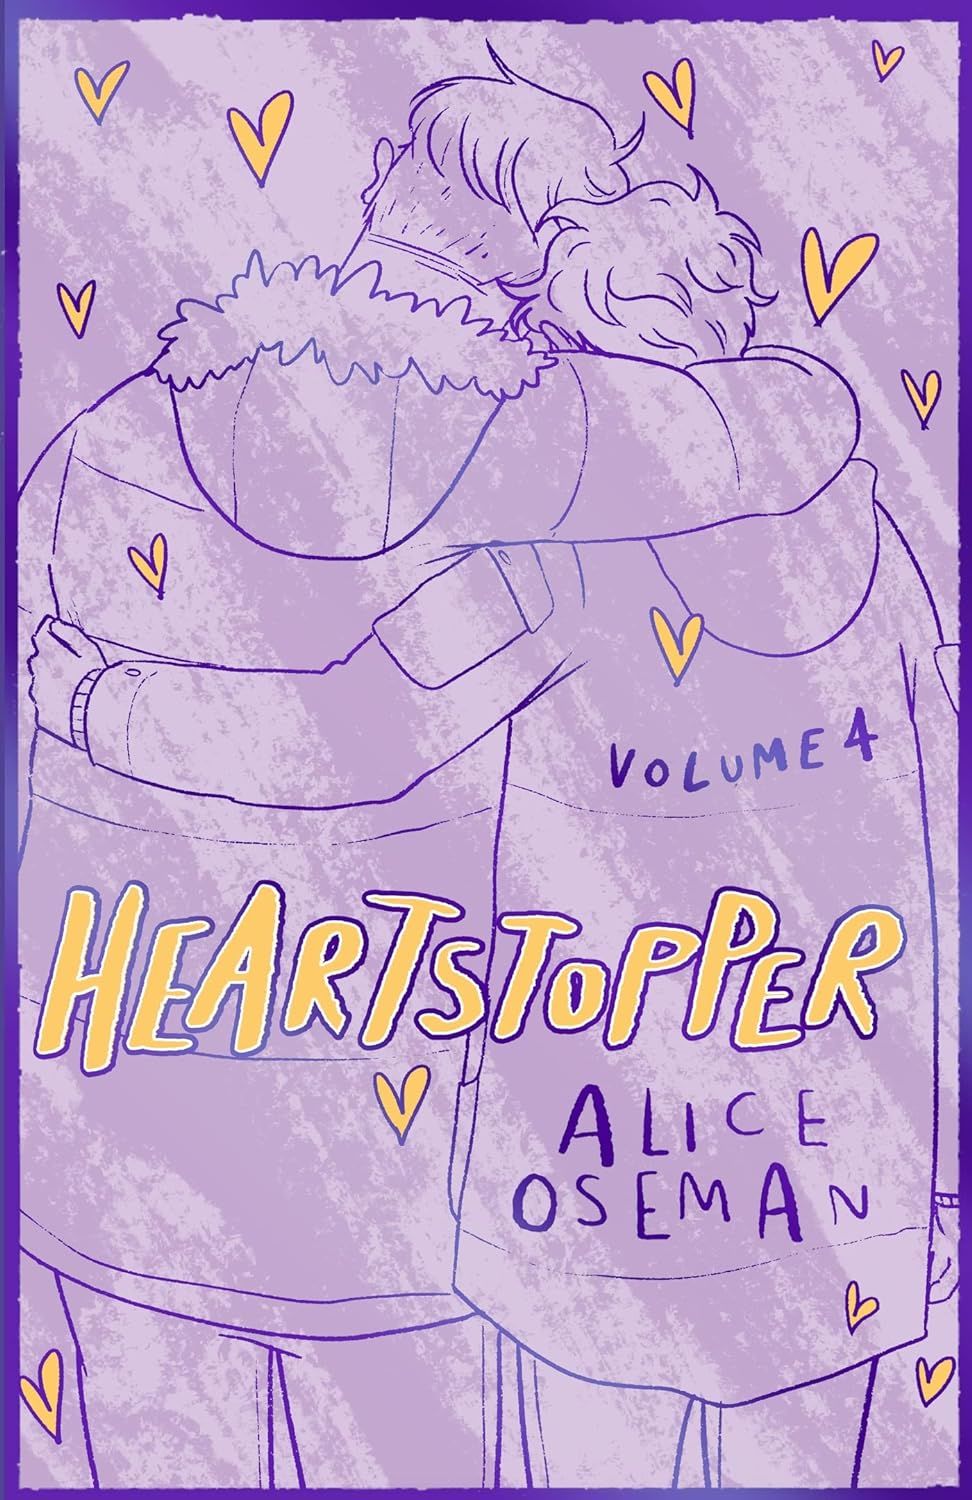 Heartstopper Volume 4 Hardcover